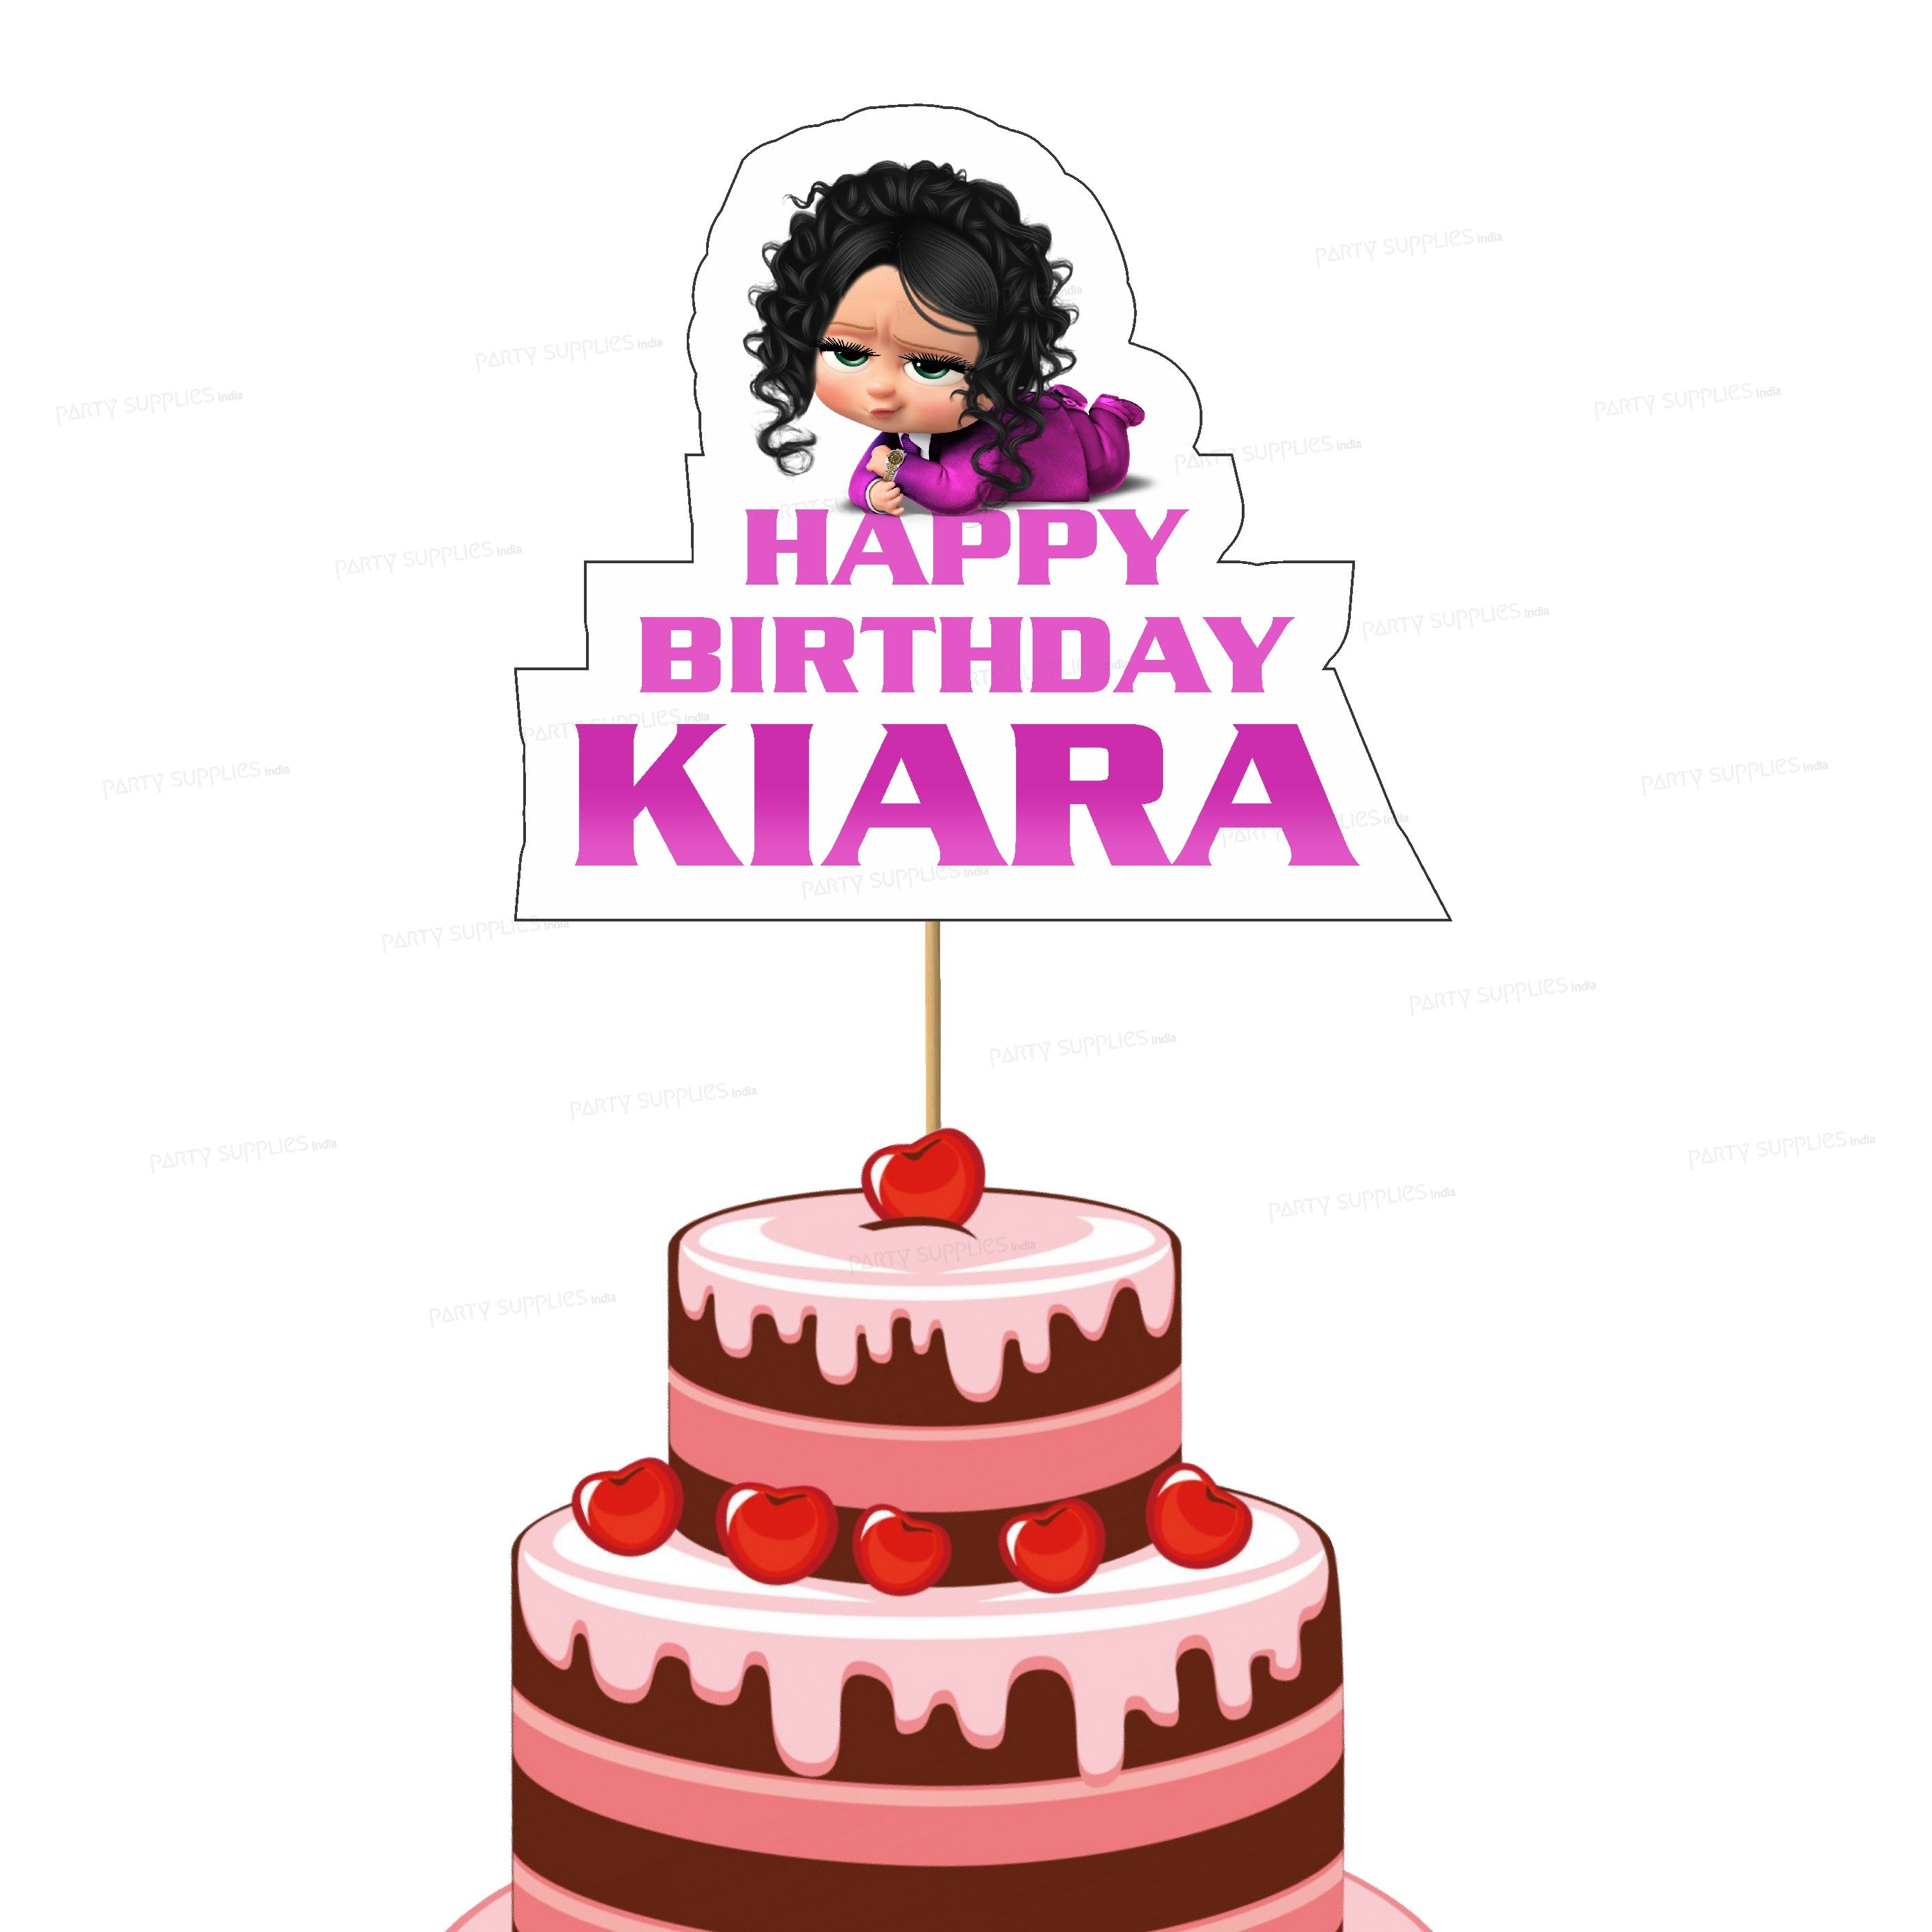 31 Happy Birthday Kiara ideas | happy birthday cake images, cake name, happy  birthday cakes